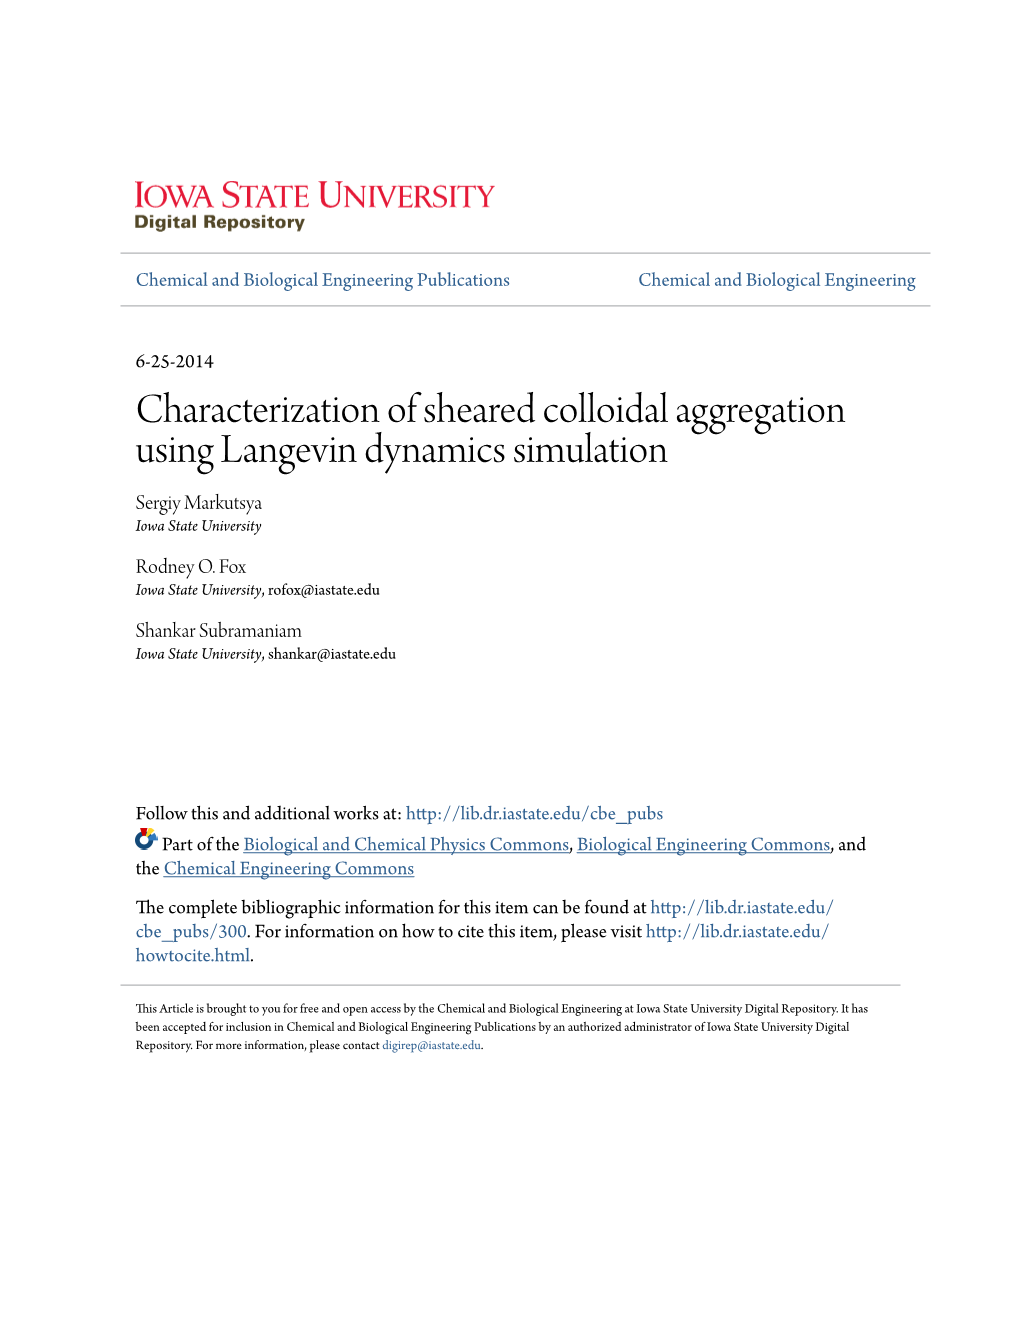 Characterization of Sheared Colloidal Aggregation Using Langevin Dynamics Simulation Sergiy Markutsya Iowa State University